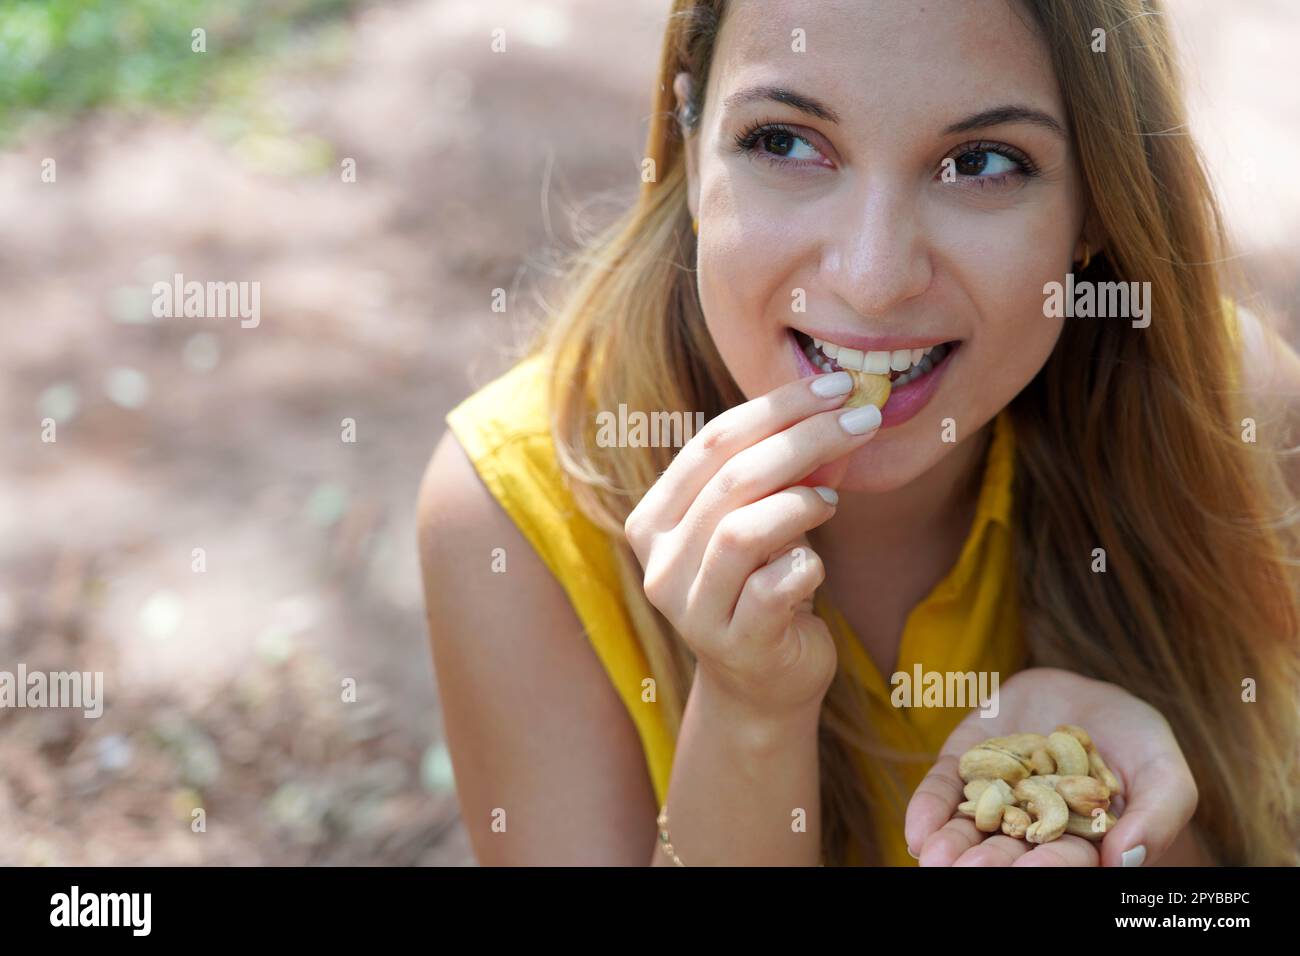 Ein wunderschönes, gesundes Mädchen, das Cashew-Nüsse im Park isst. Schaut zur Seite. Stockfoto